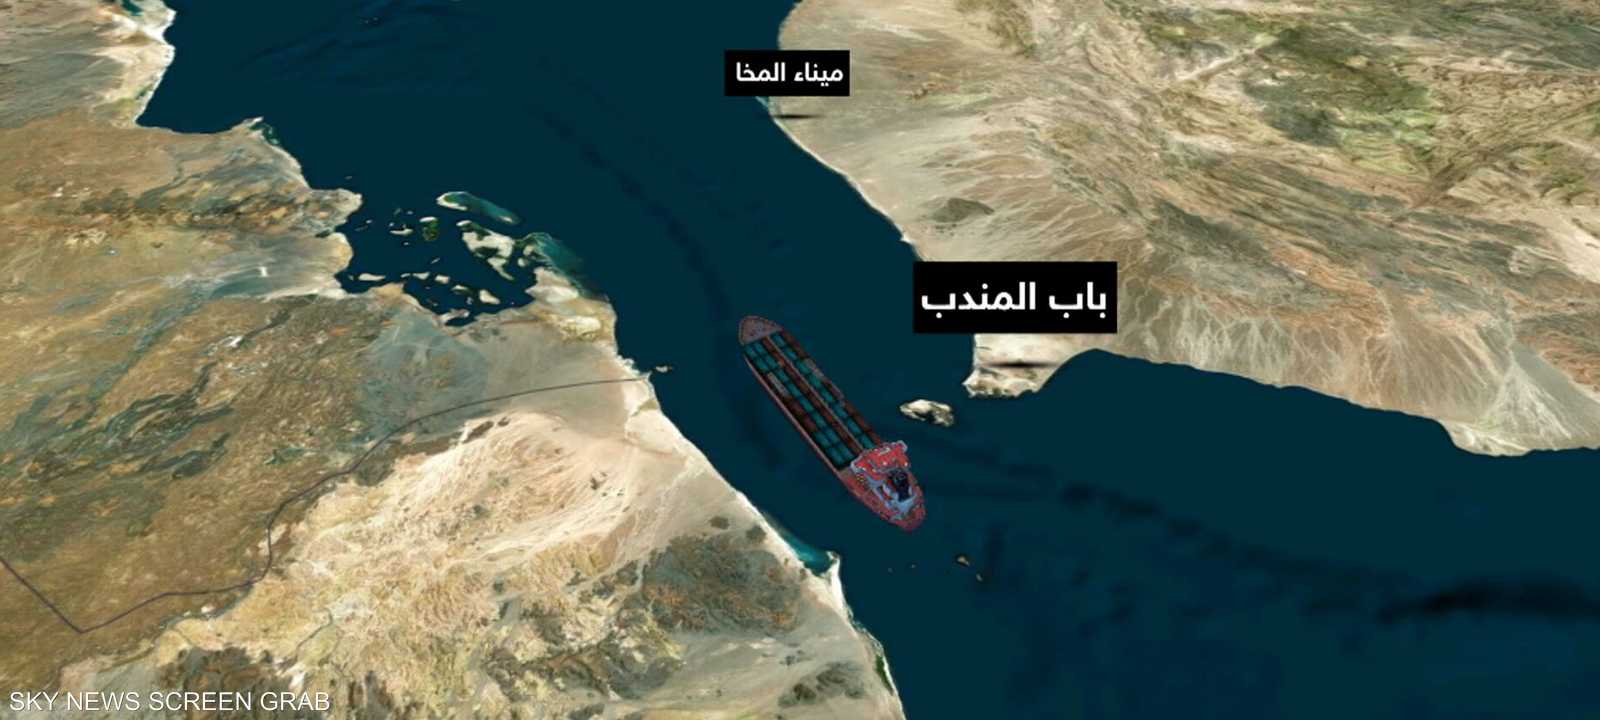 حركة التجارة بين الشرق والغرب تتباعد بسبب هجمات البحر الأحمر